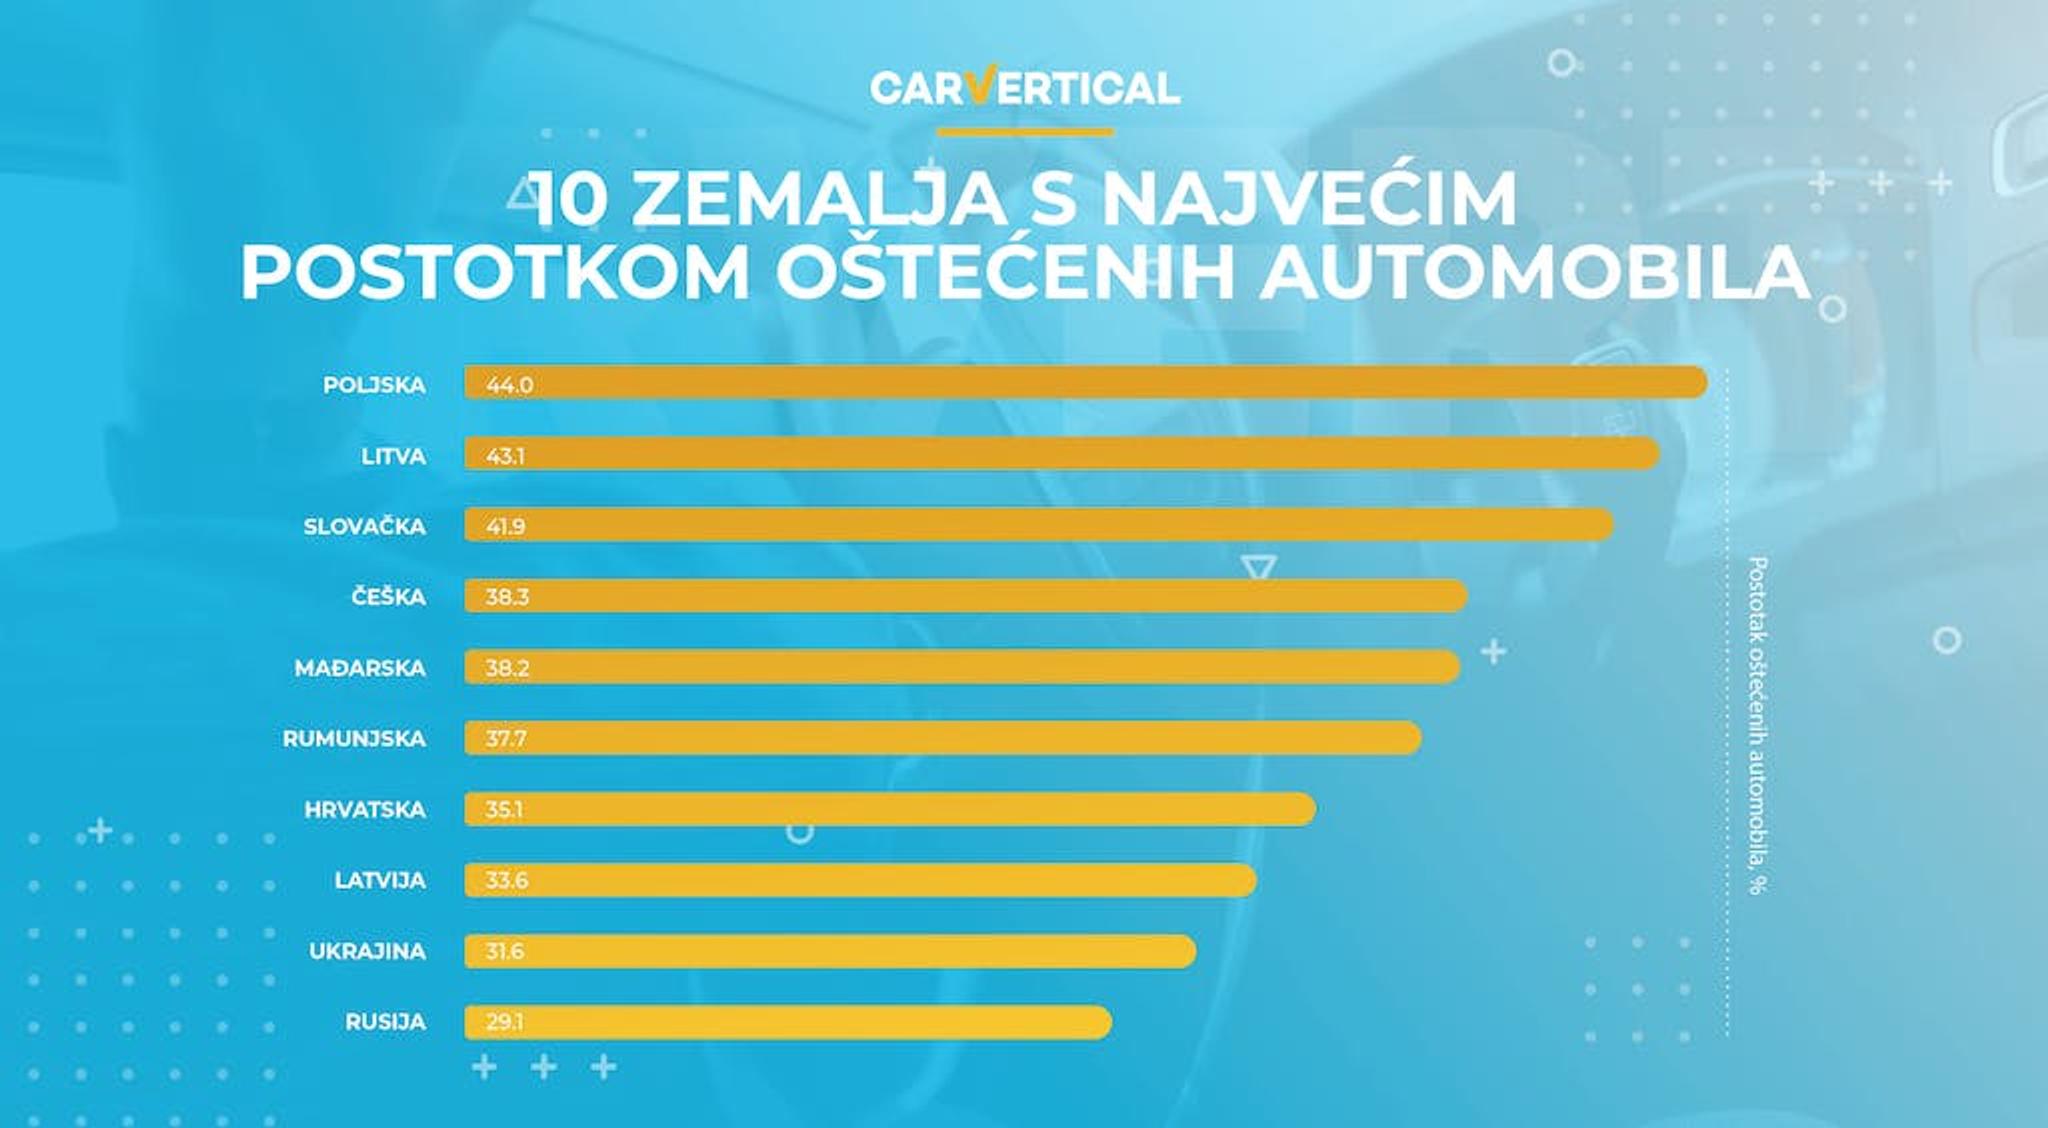 10 zemalja s največim postotkom oštečenih automobila